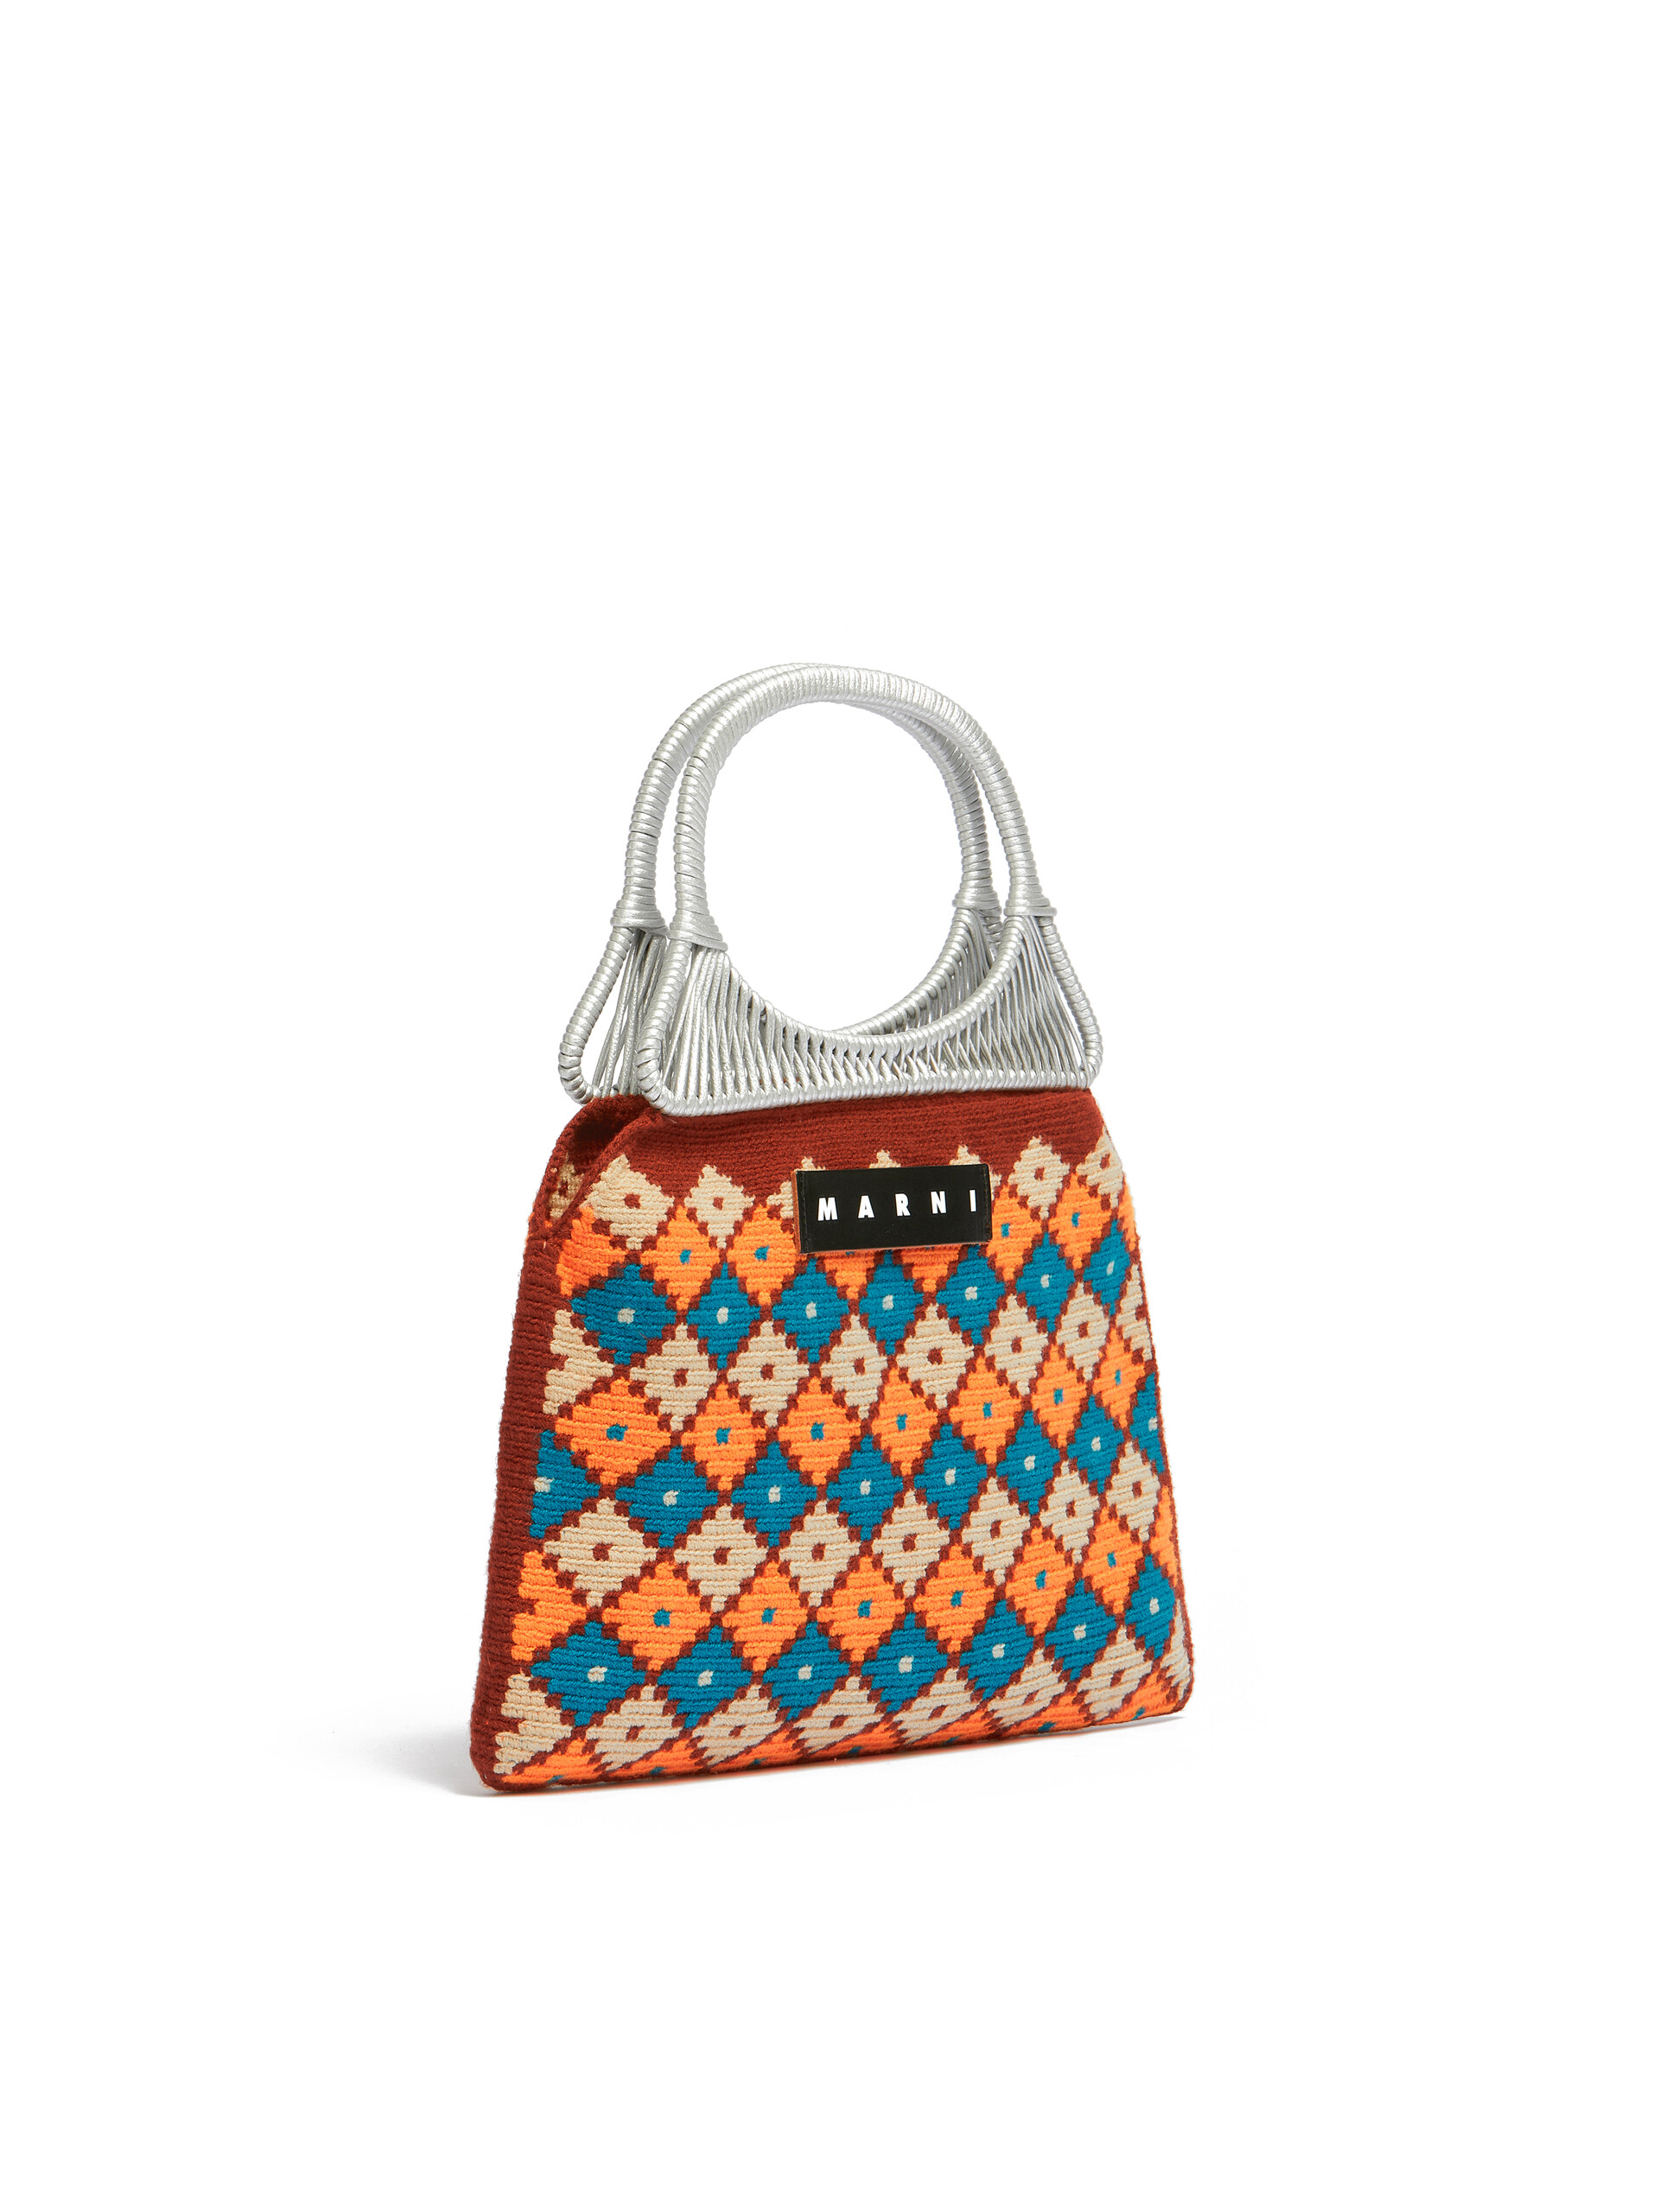 MARNI MARKET Handtasche mit geometrischem Muster aus Baumwolle in Orange - Shopper - Image 2